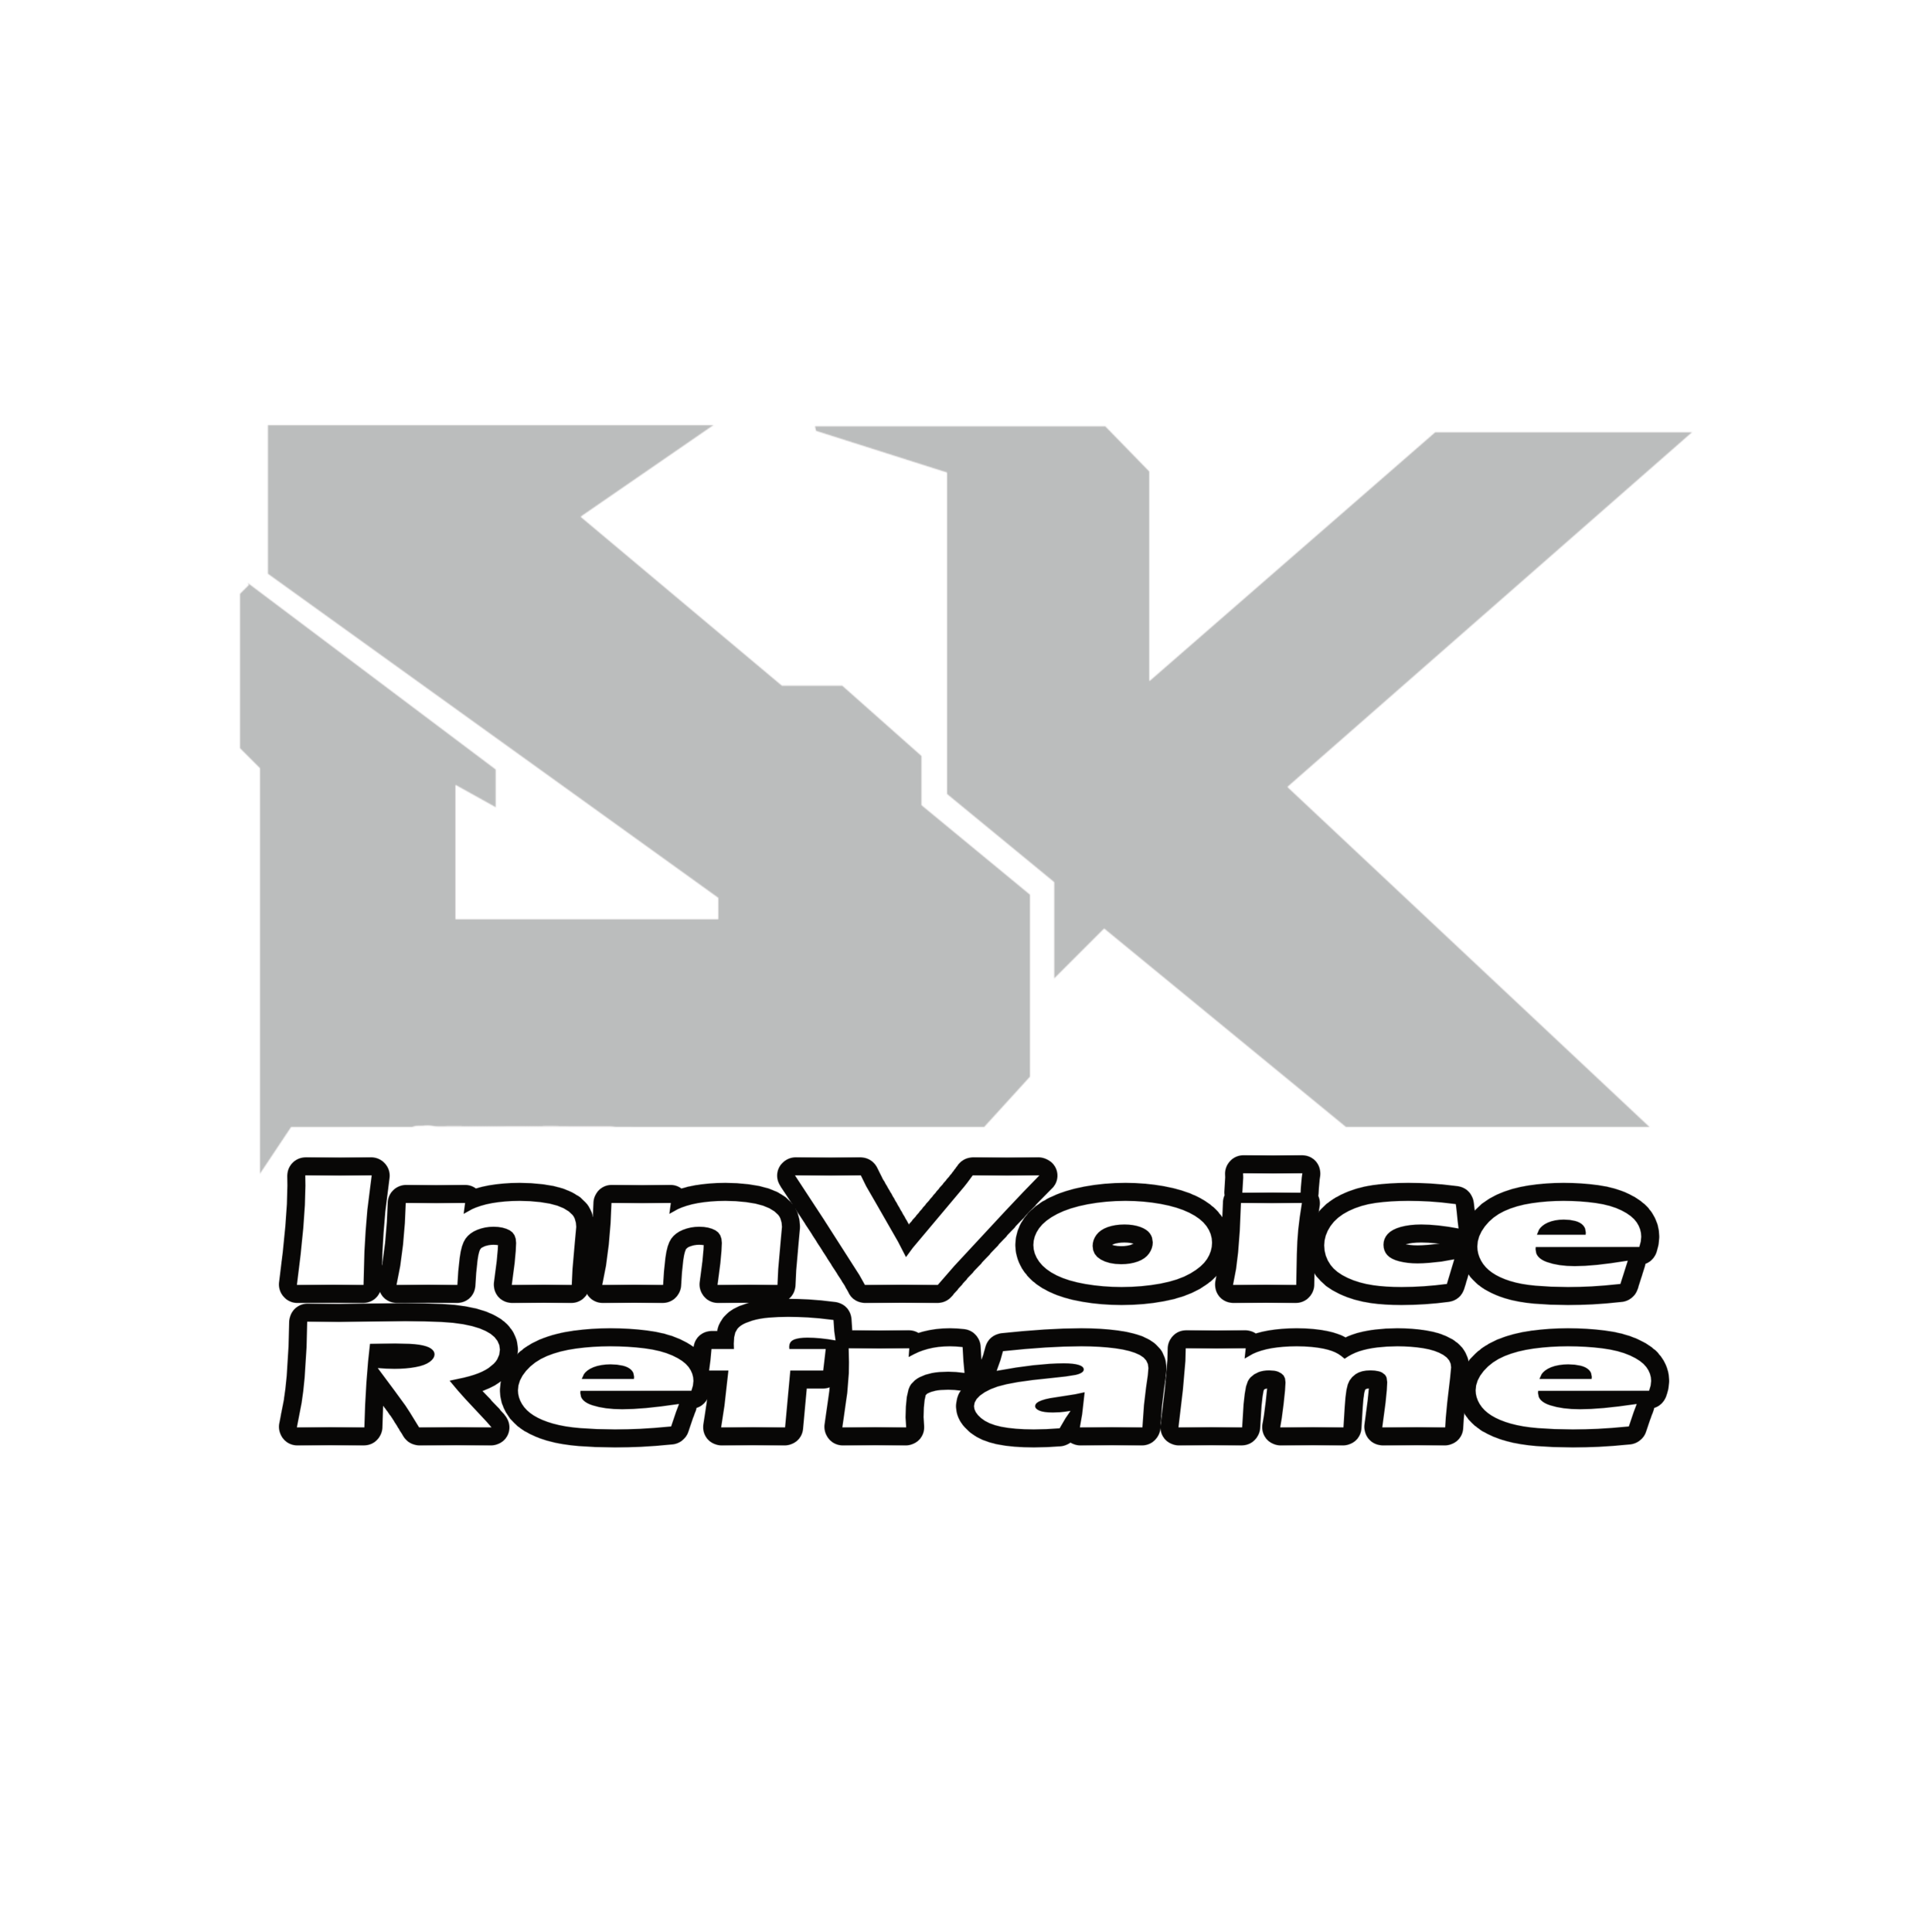 Dkr036 Innvoice Reframe Dream Killer Recordings